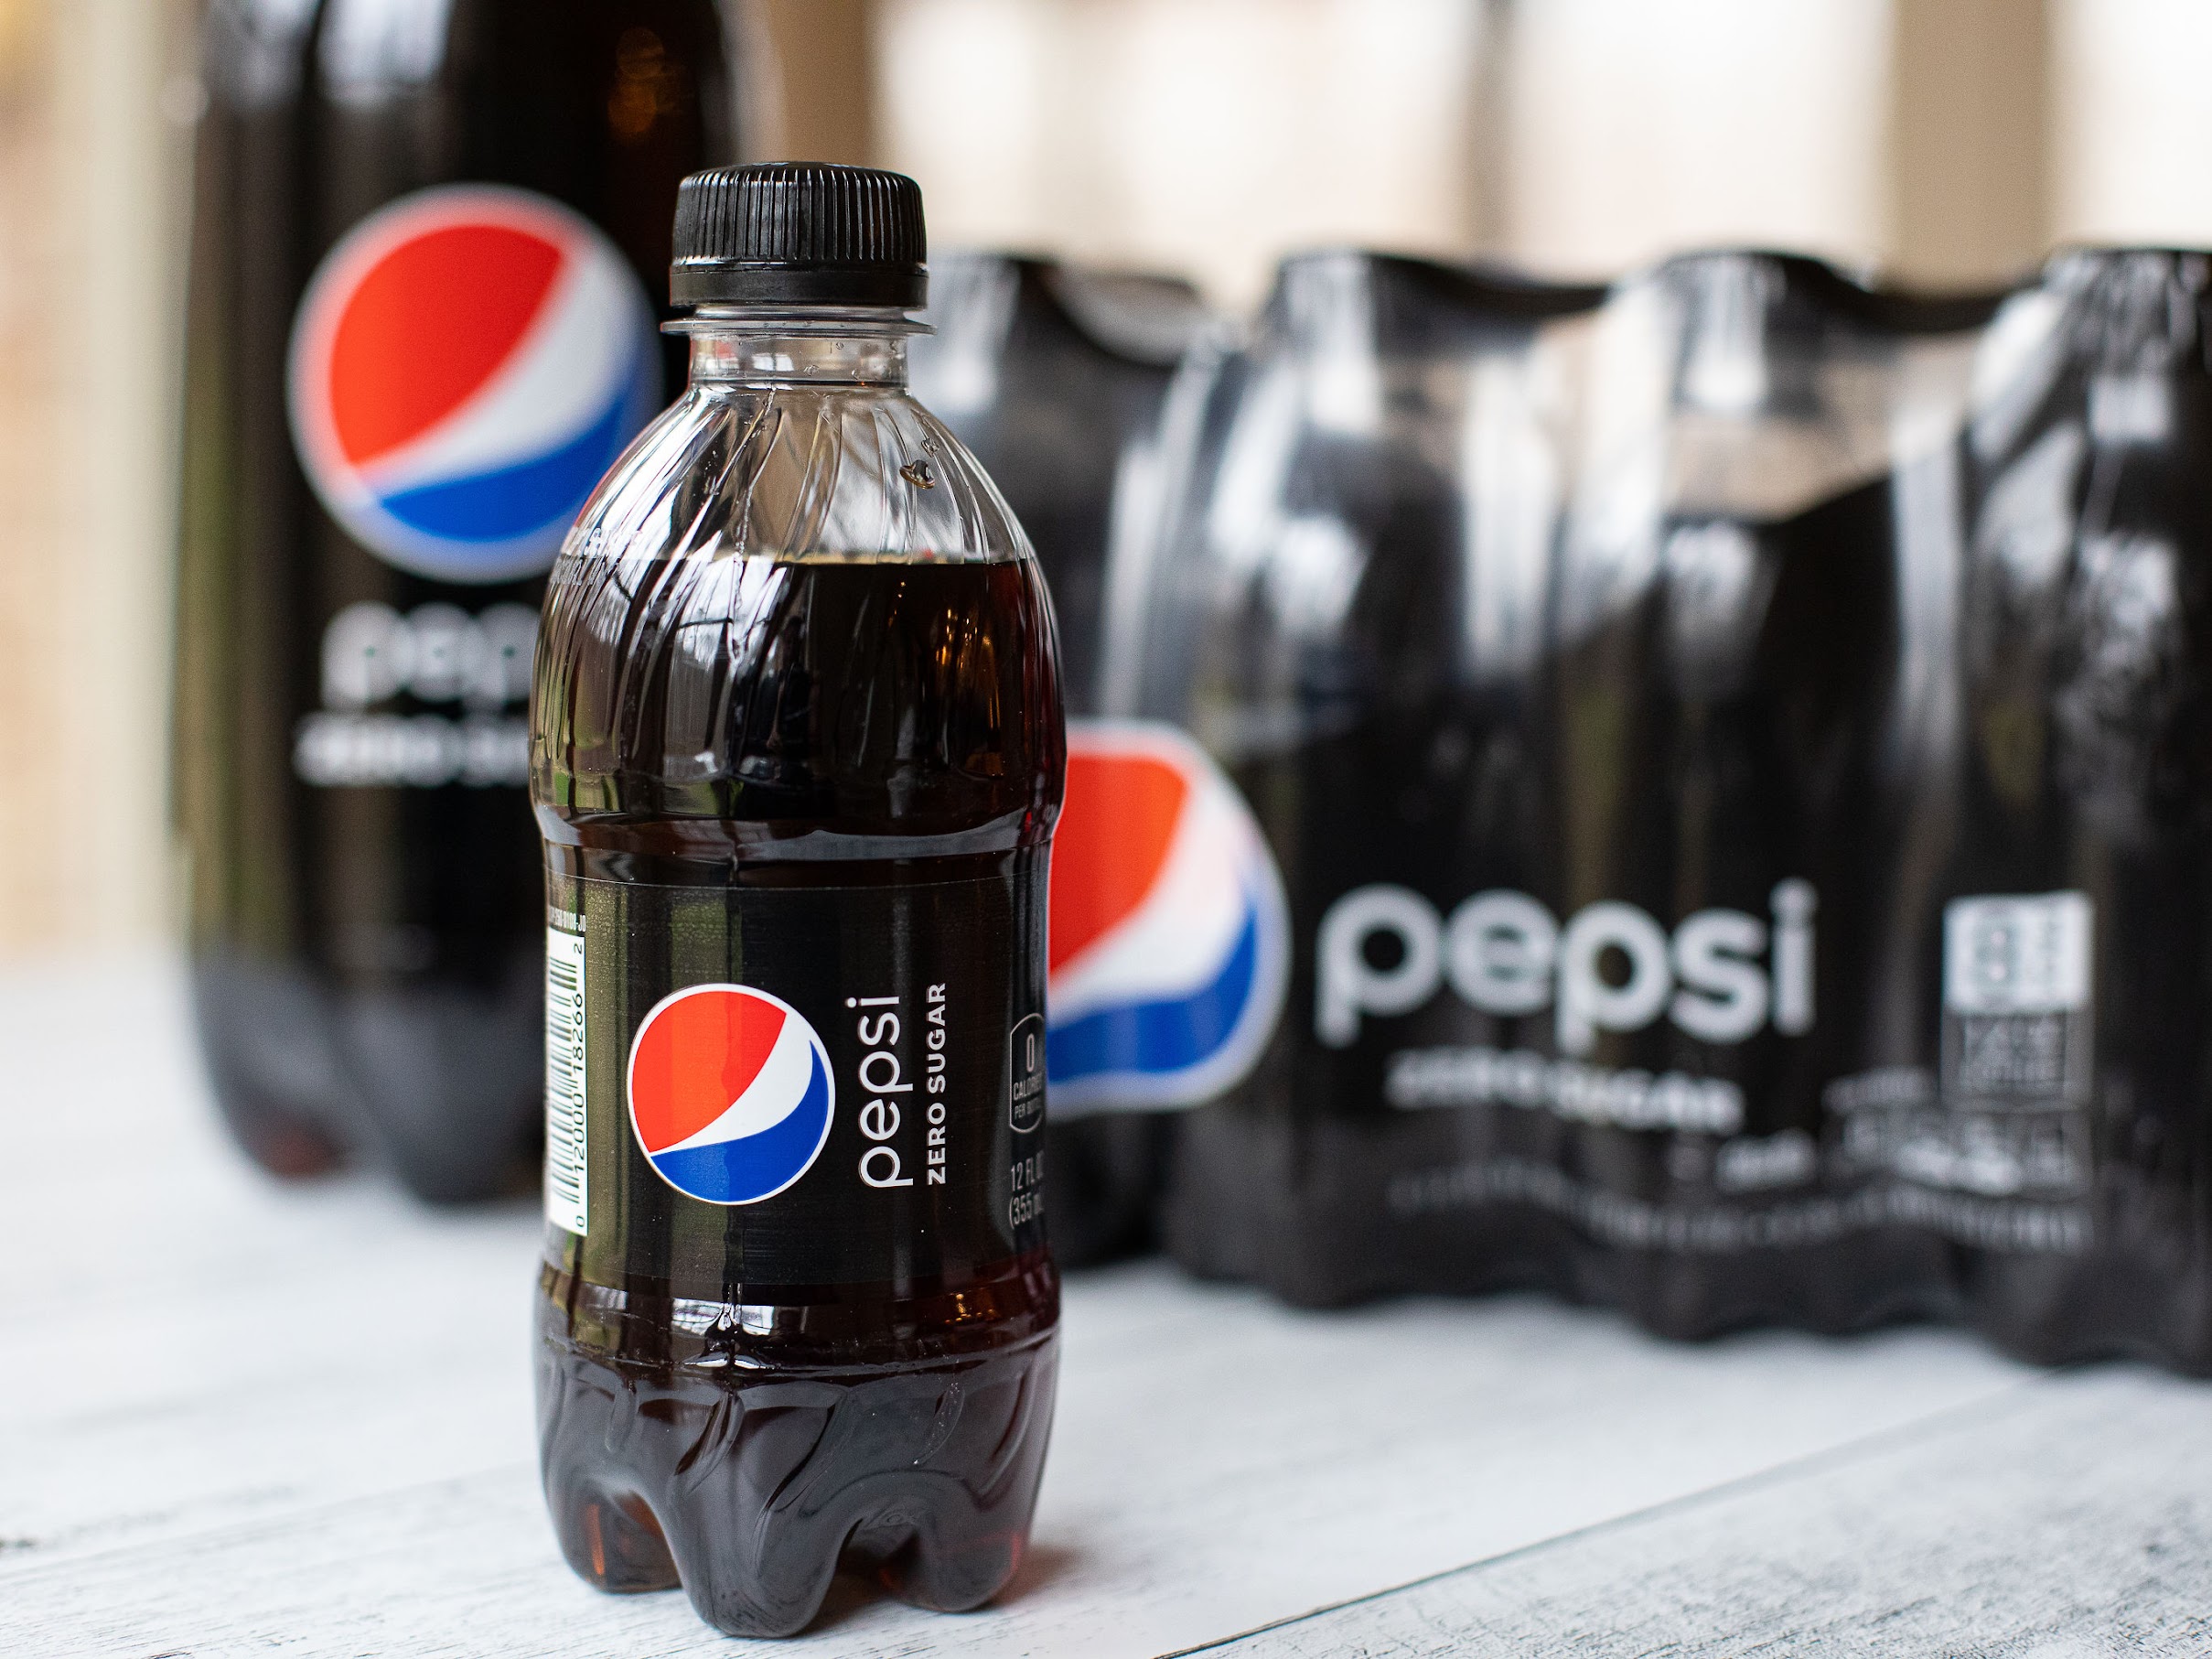 Pepsi Coupon For Publix BOGO Sale – Get 6-Pack or 8-Pack Bottles For Just $2.50